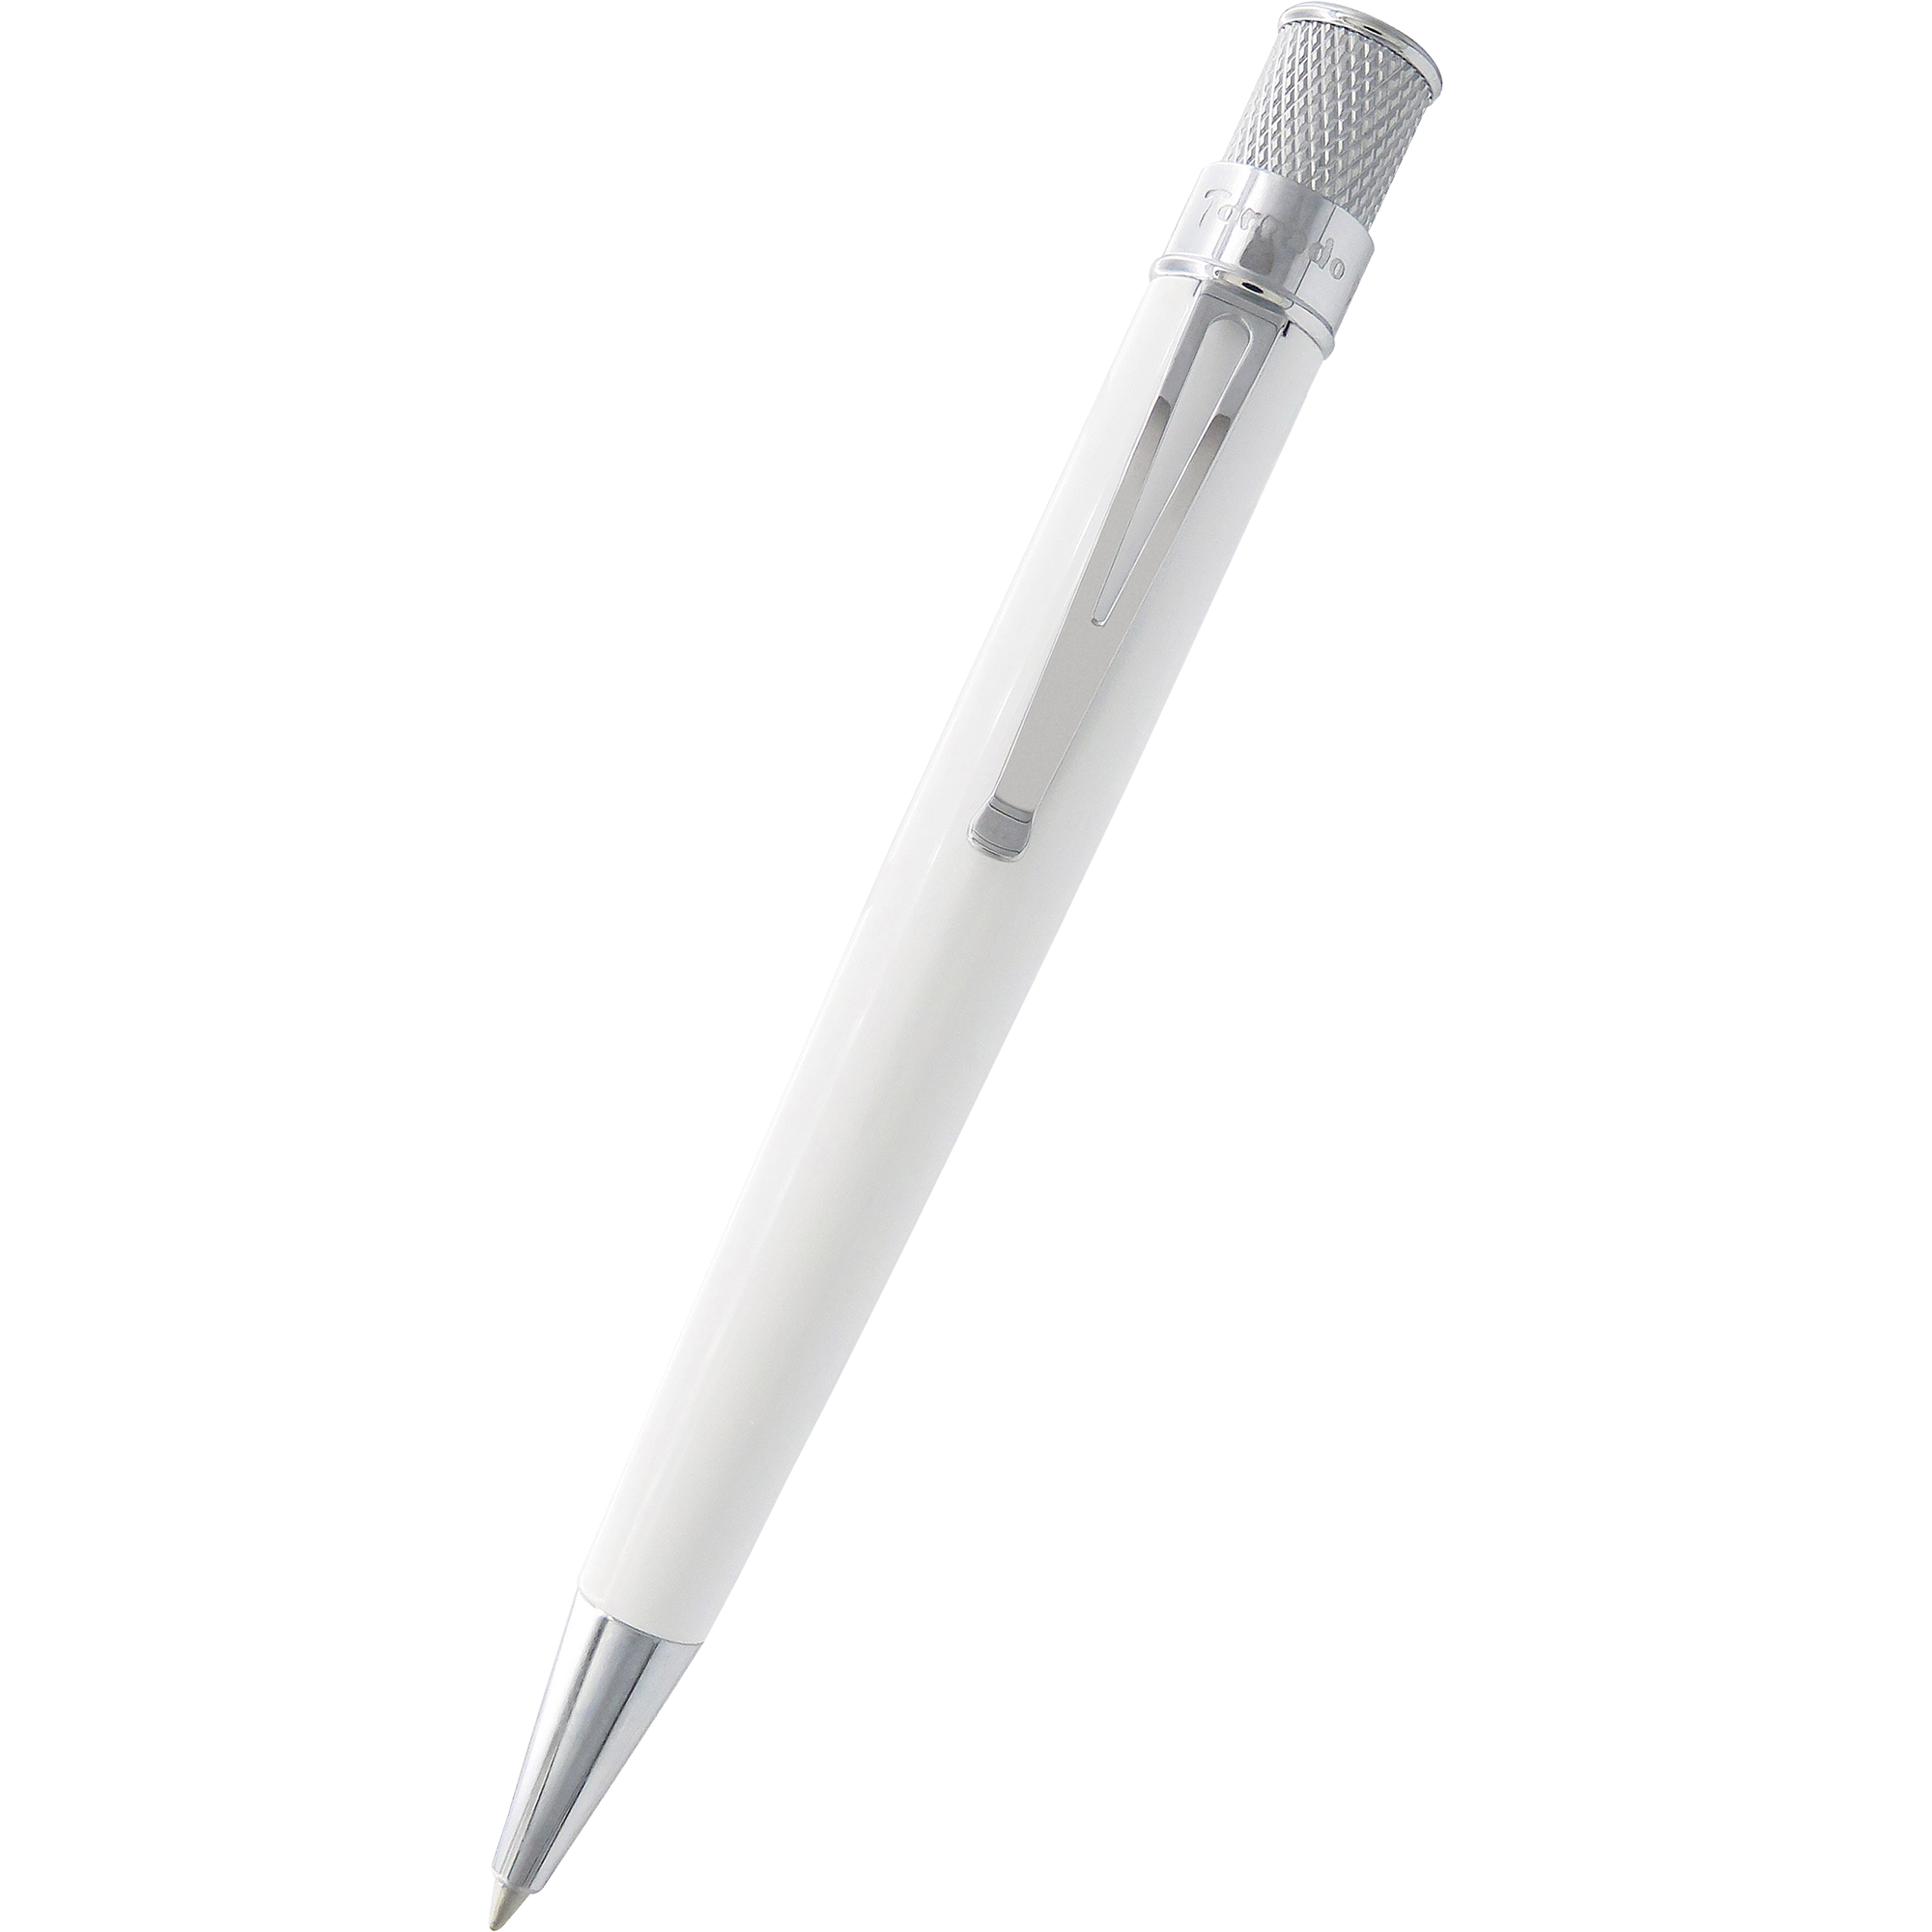 Retro 51 Tornado Rollerball Pen in Classic White (Glow in the Dark